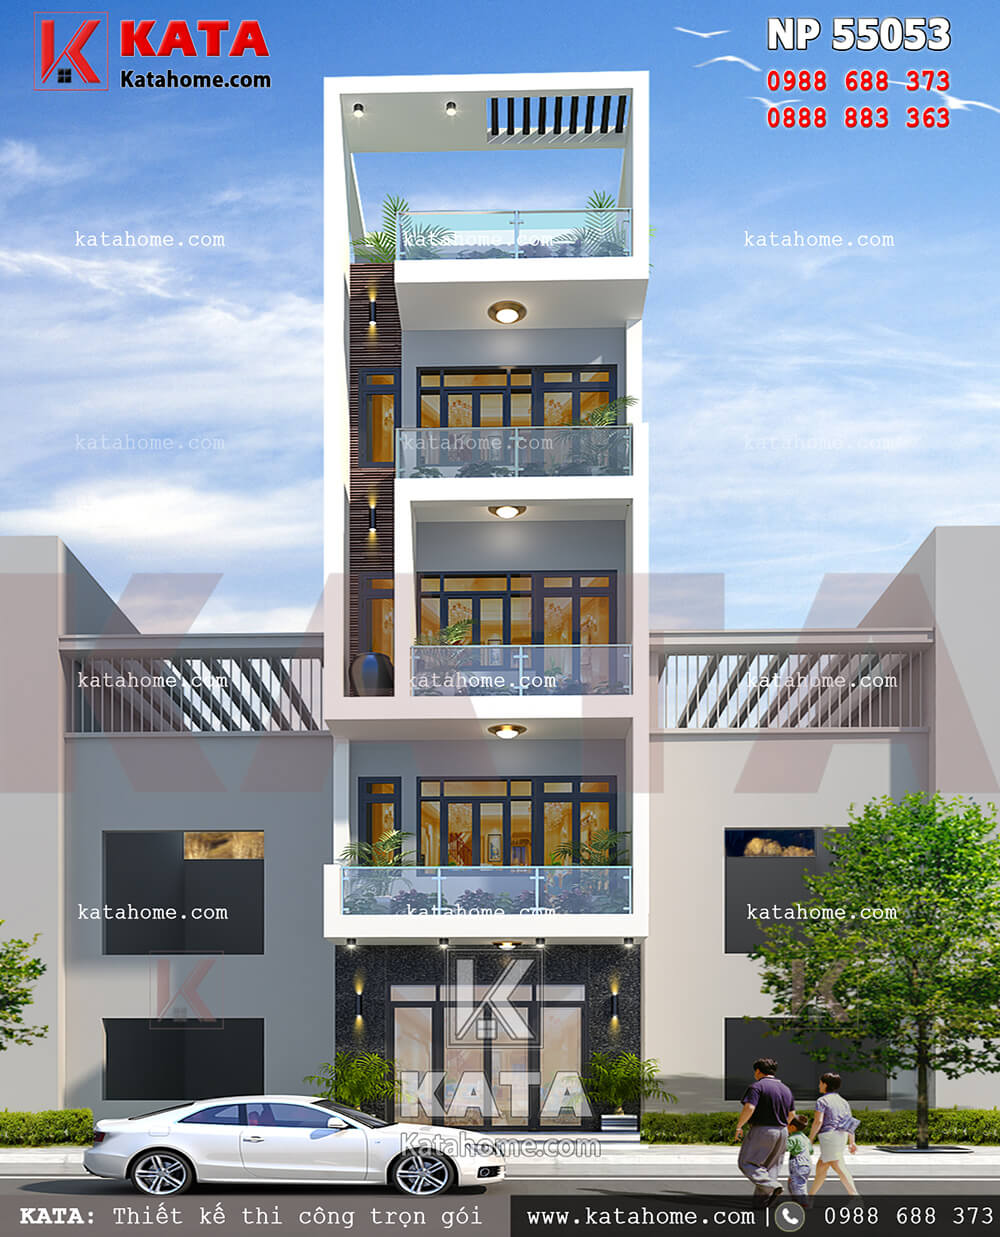 Thiết kế nhà ở 100m2 hiện đại tại Hà Nội – Mã số: NP 55053